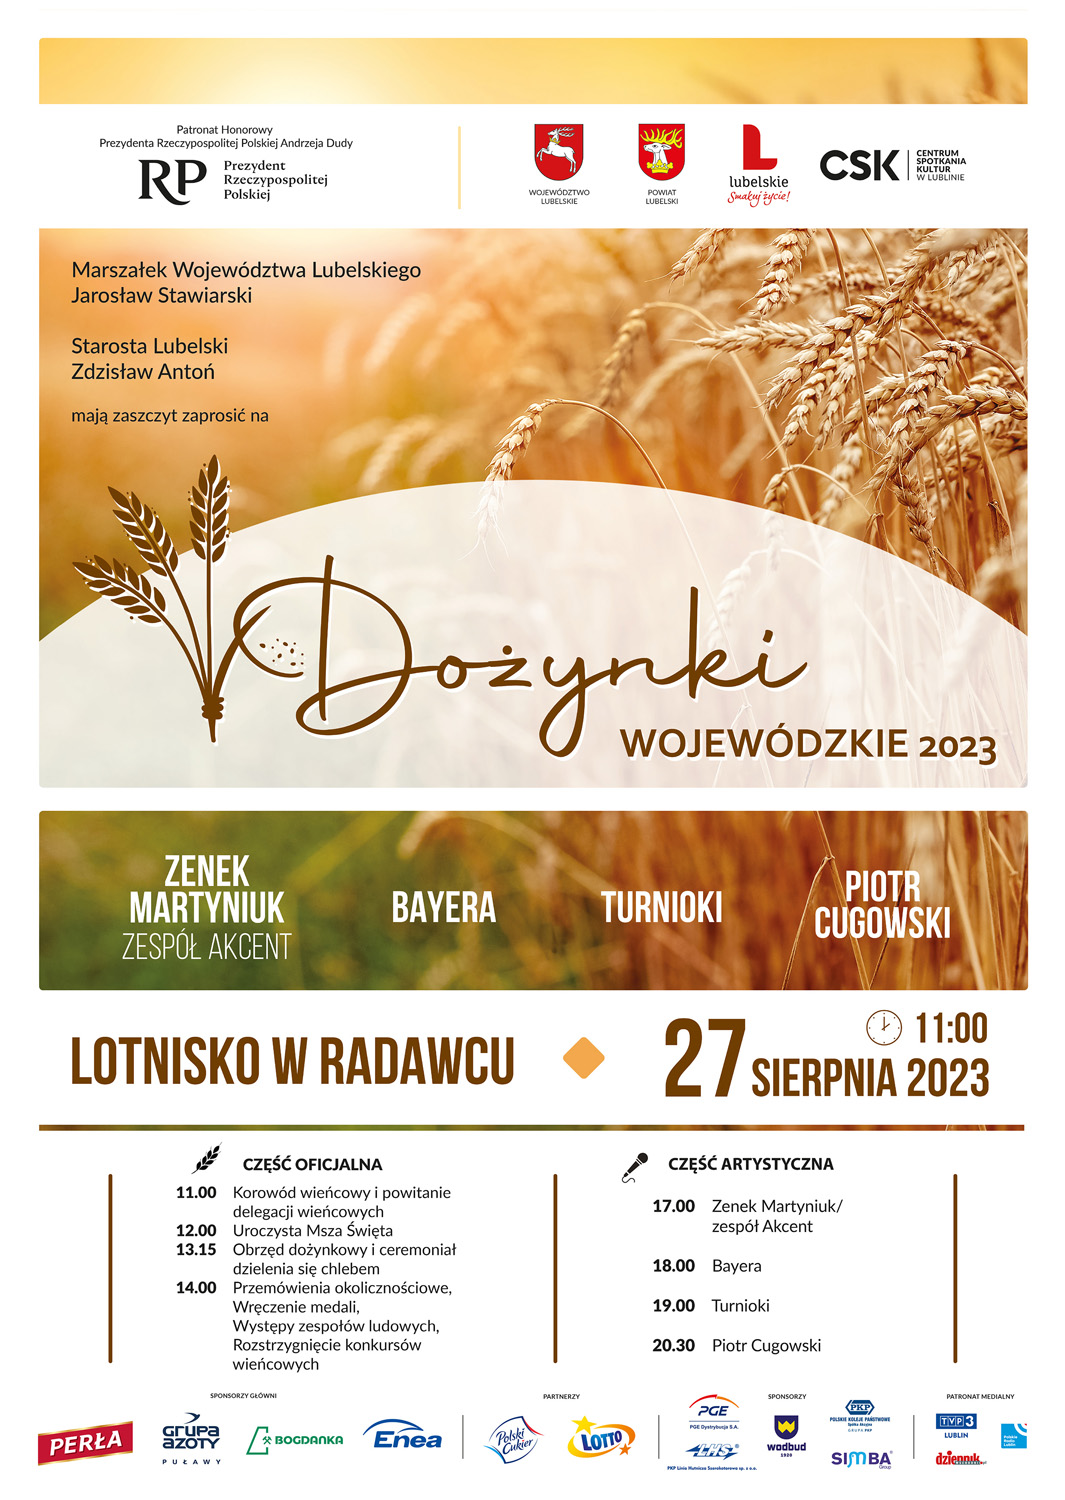 Plakat przedstawiający program Dożynek Wojoewózkich w Radawcu w dn. 27.08.2023 r.